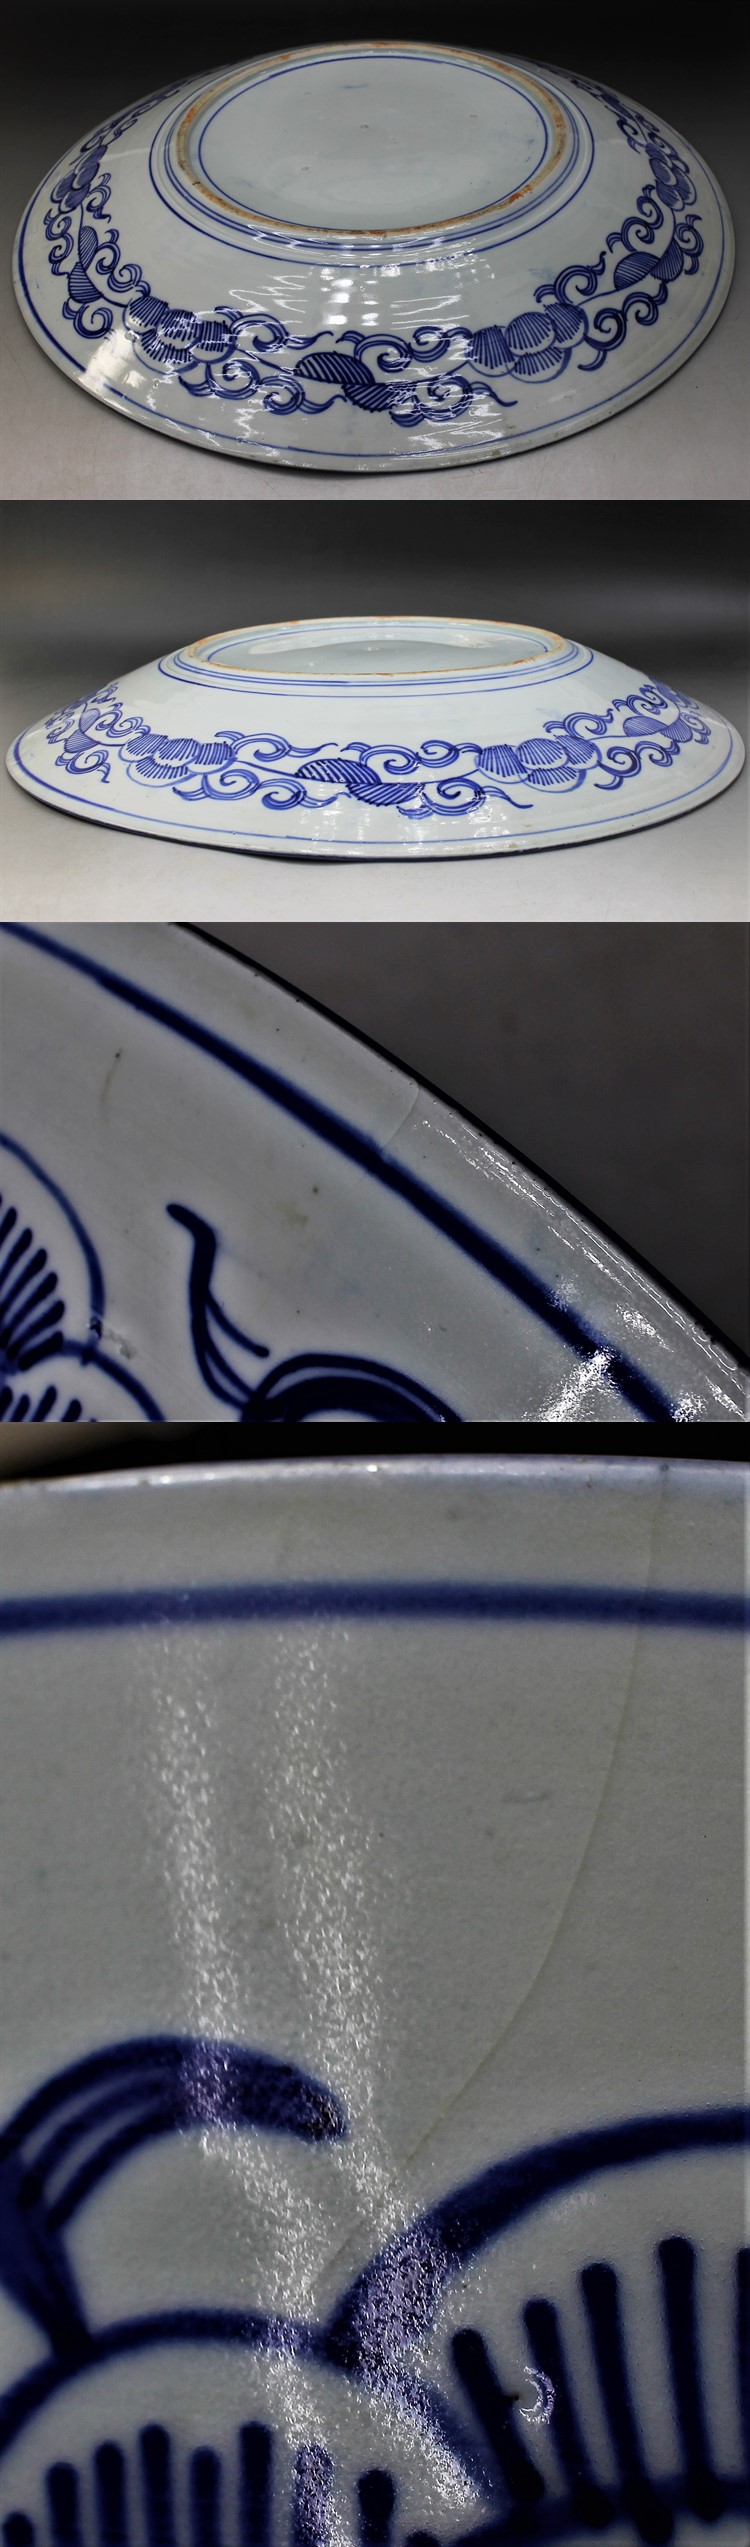 F146 大皿 印判 染付 微塵唐草 径46.5㎝ 一尺五寸 皿 明治 大正 昭和 有田 伊万里 蔵出 古玩